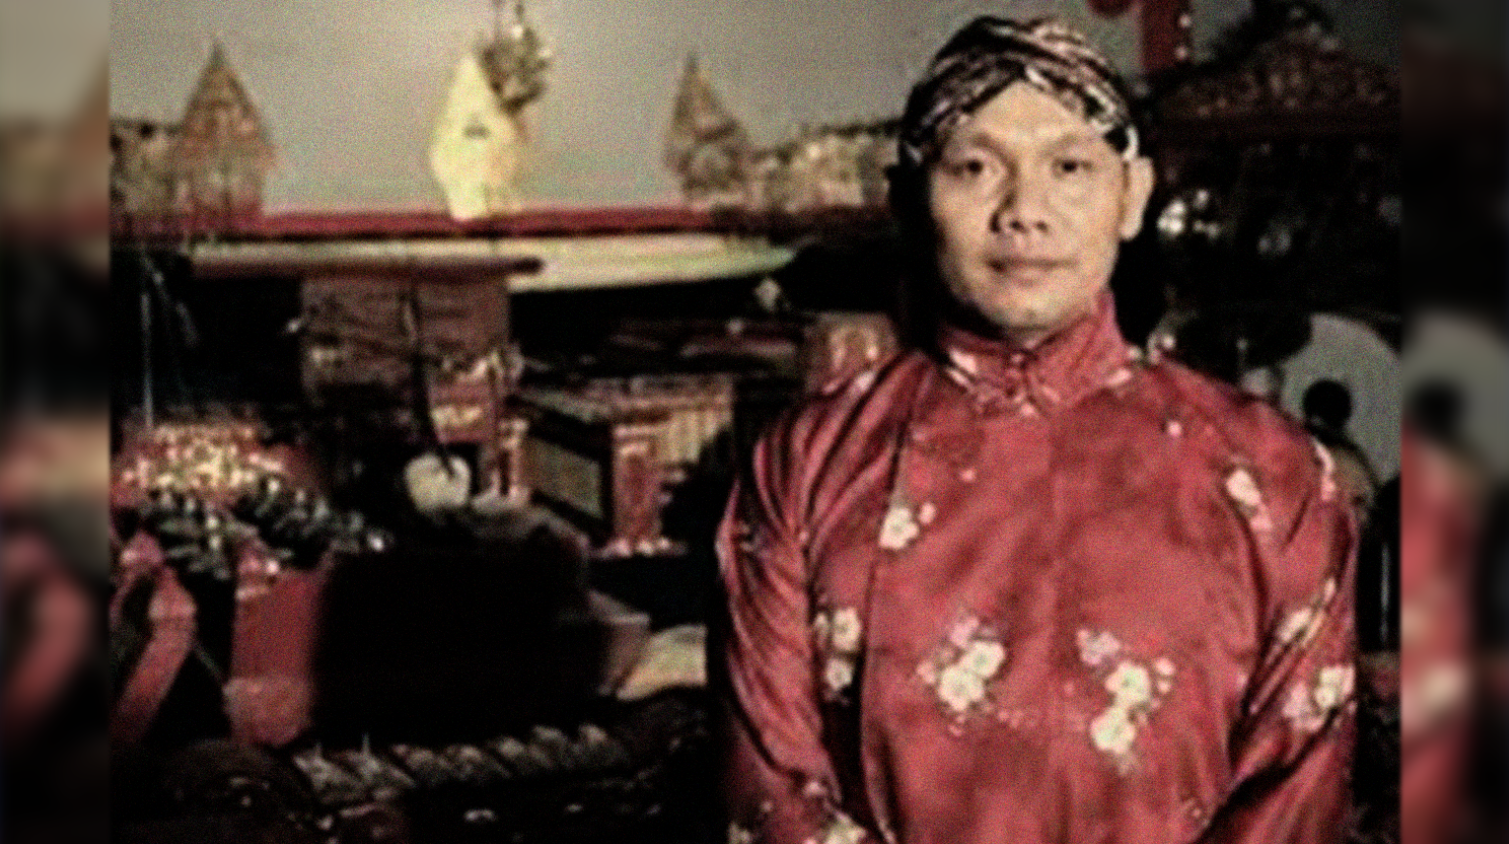 Ki Seno Nugroho, dalang wayang kulit asal Yogyakarta dikabarkan meninggal. (Foto: Facebook)